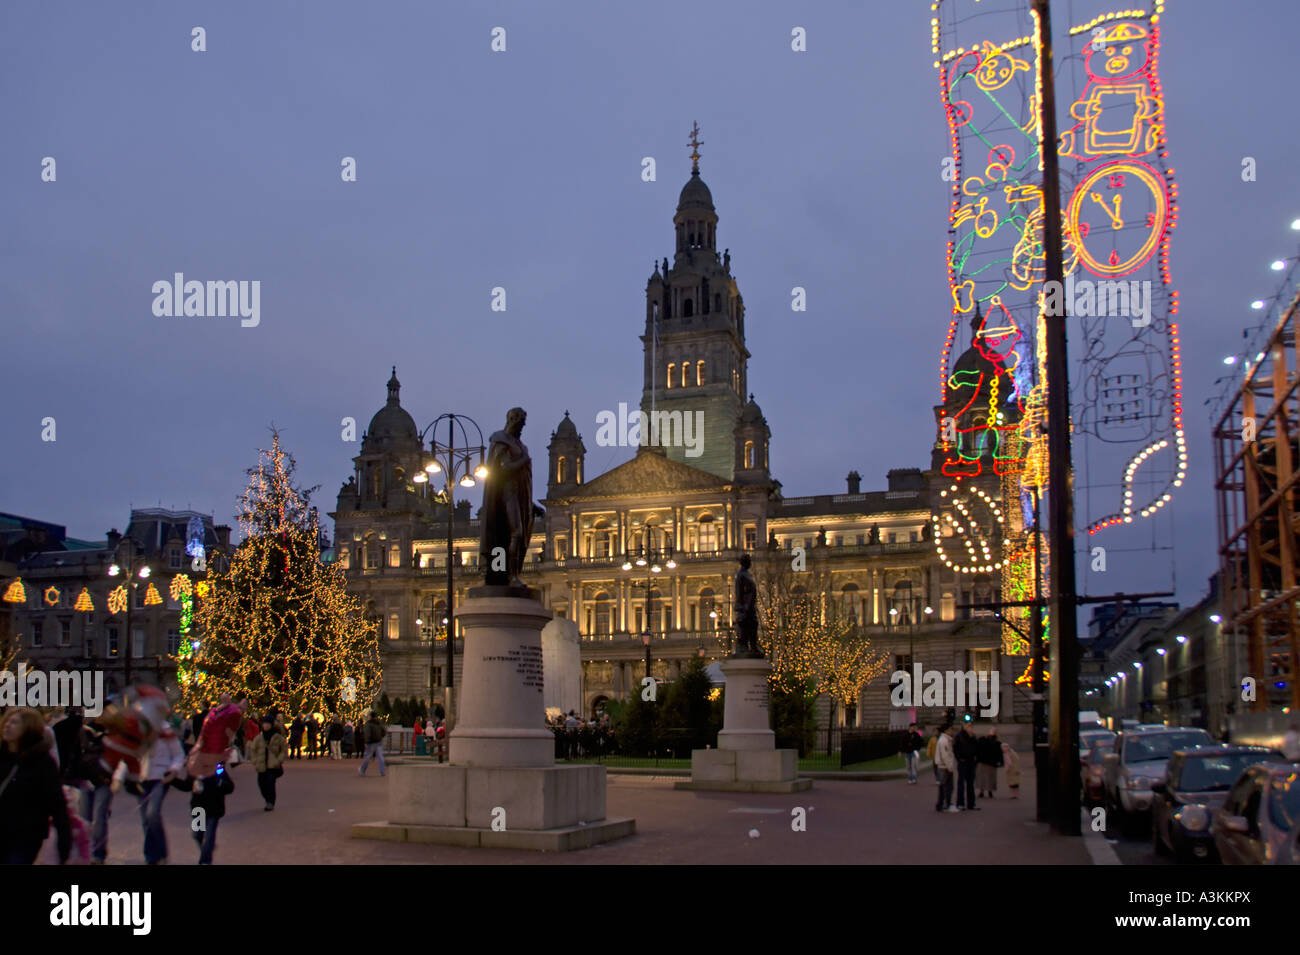 Les lumières de Noël et des statues à George Square Glasgow City Chambers à l'arrière Central Glasgow Ecosse Banque D'Images